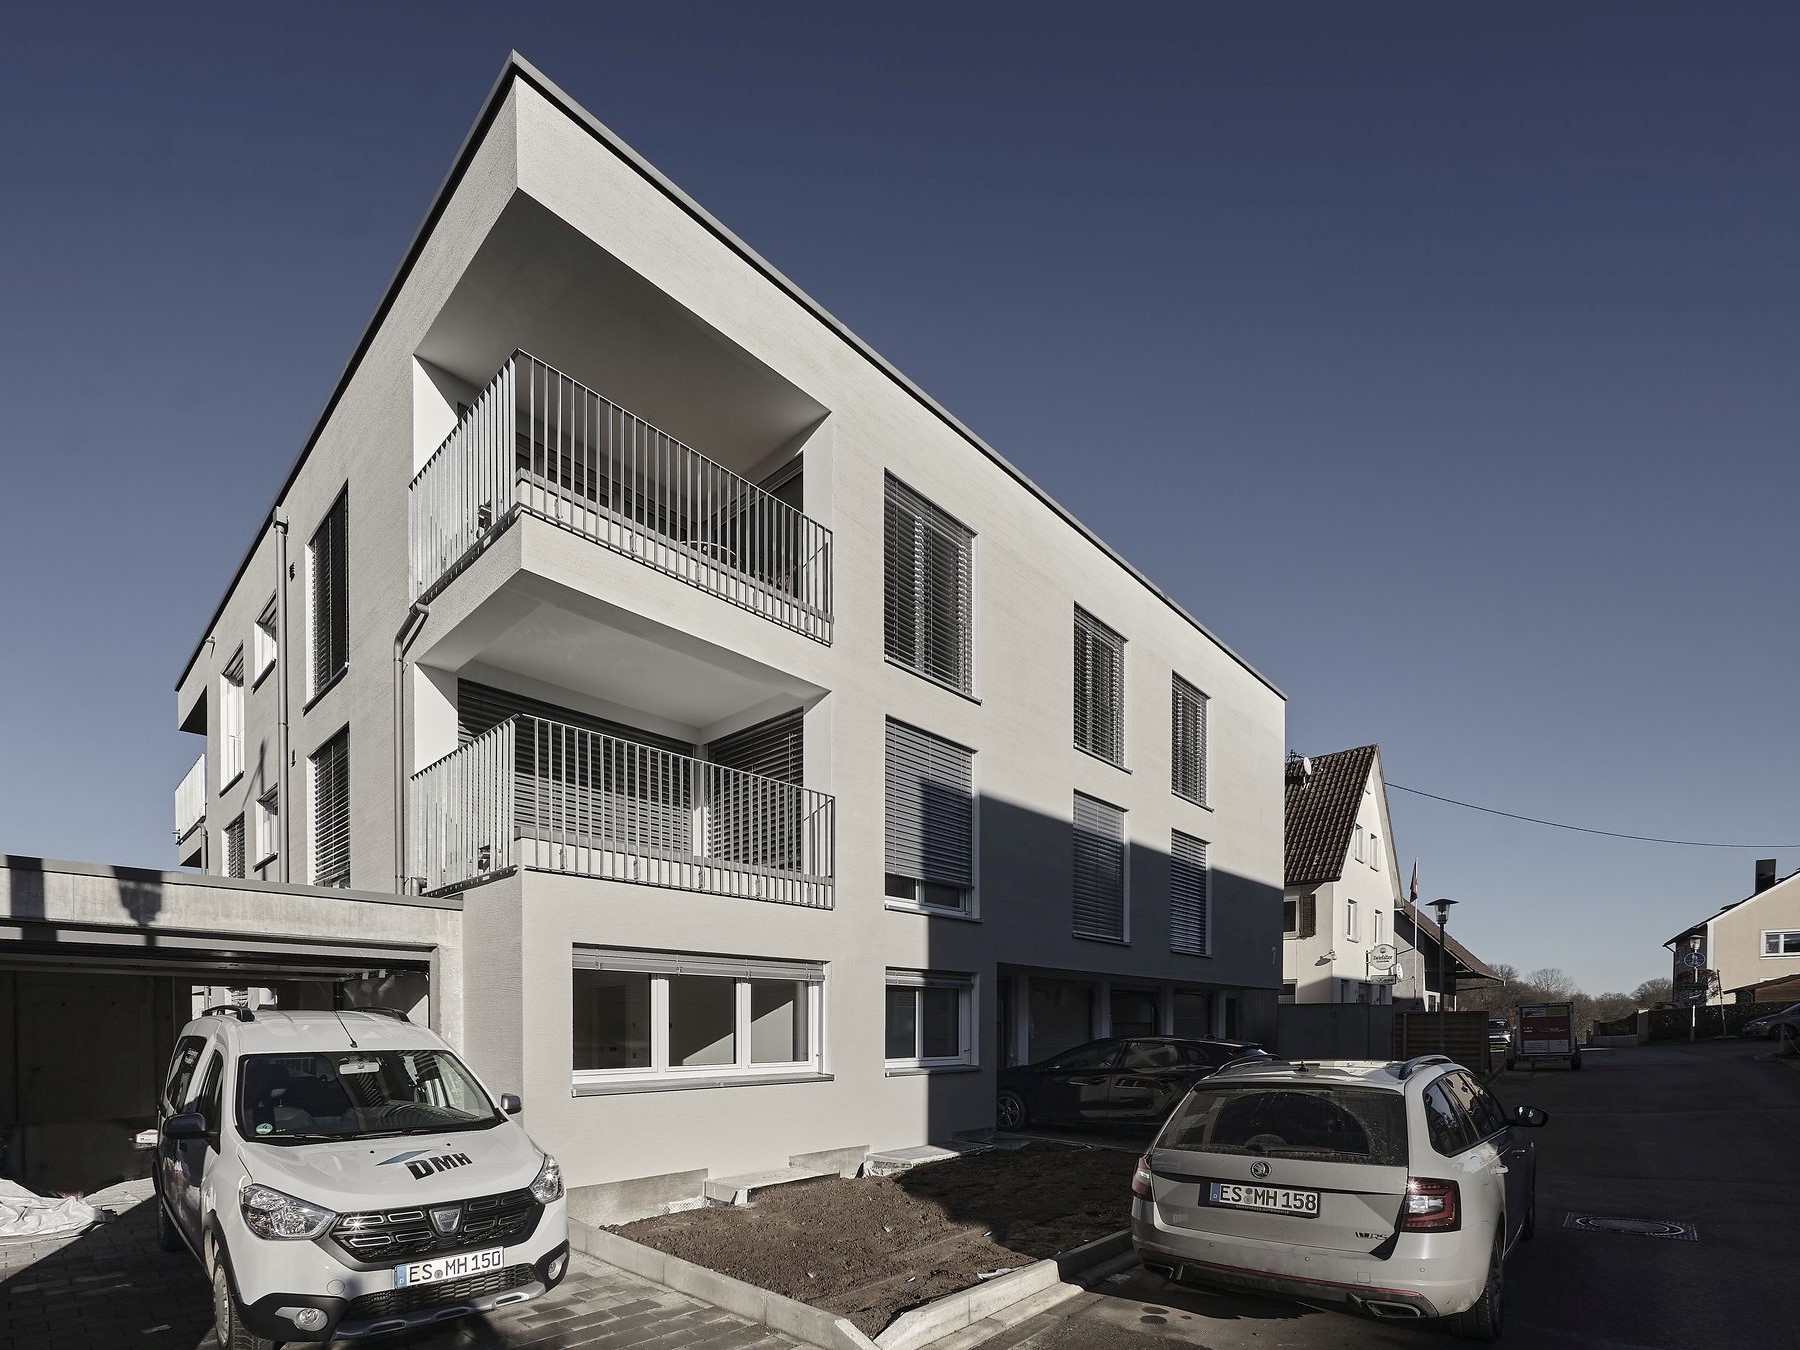 Modernes Mehrfamilienhaus mit Flachdach, eigeschnittenen Balkonen und Jalousien